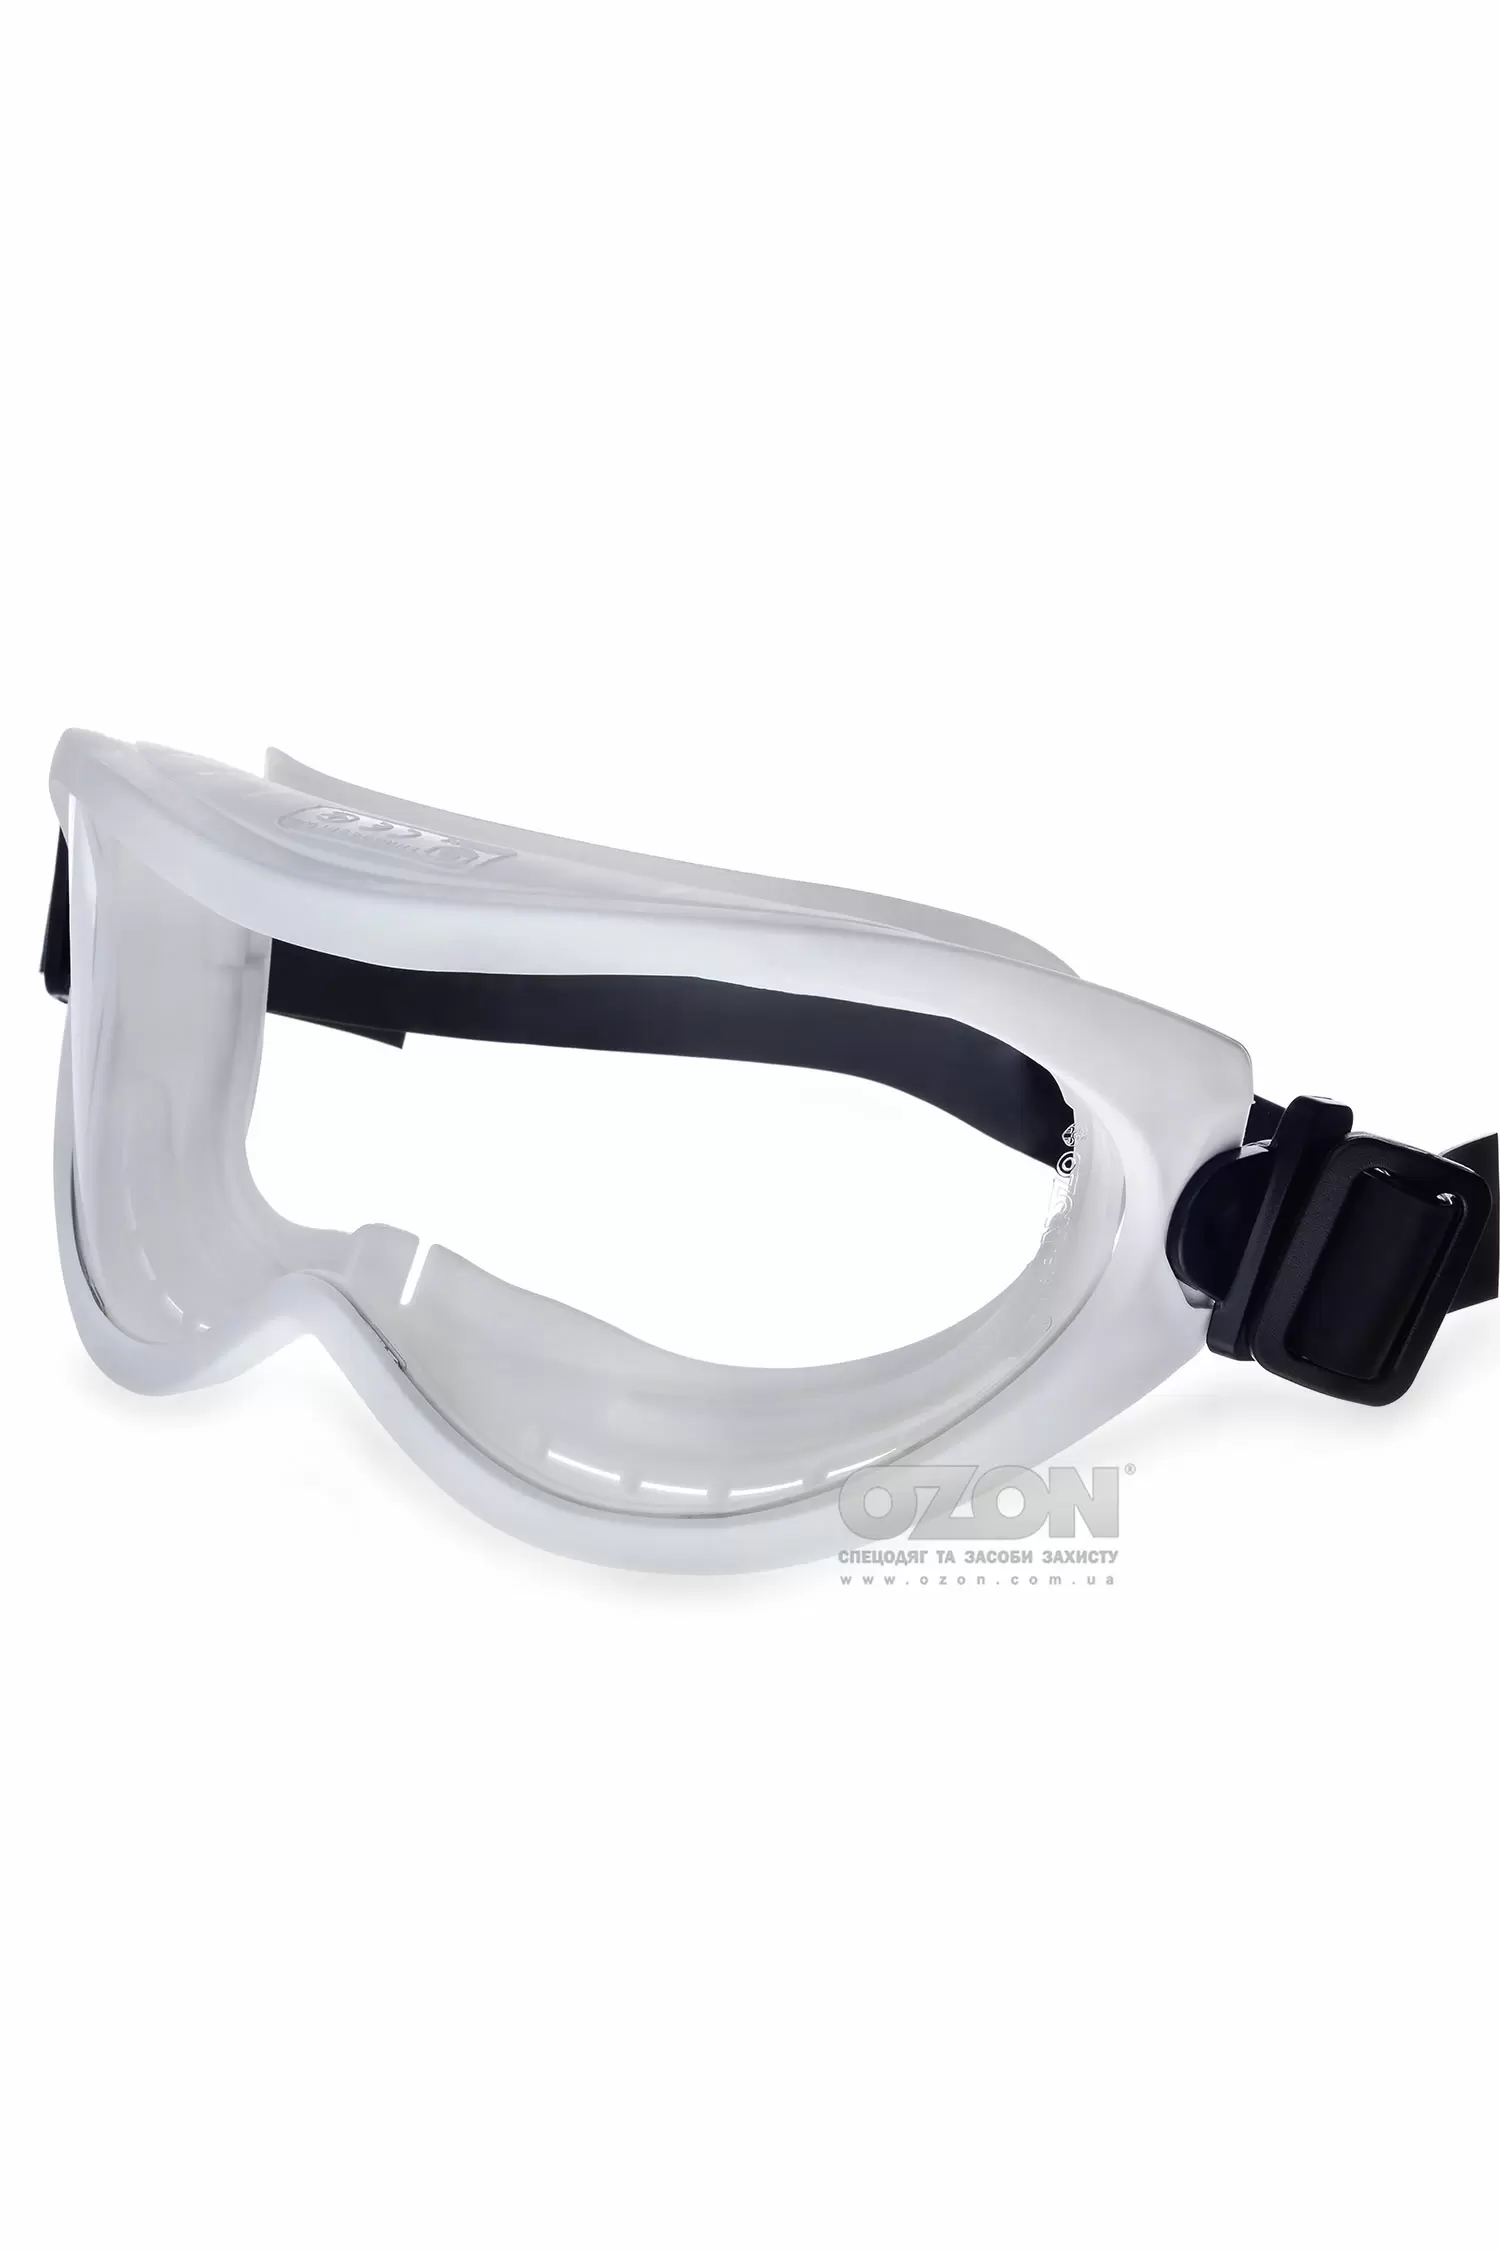 Захисні окуляри OZON 7-100, автоклавові - Фото 1